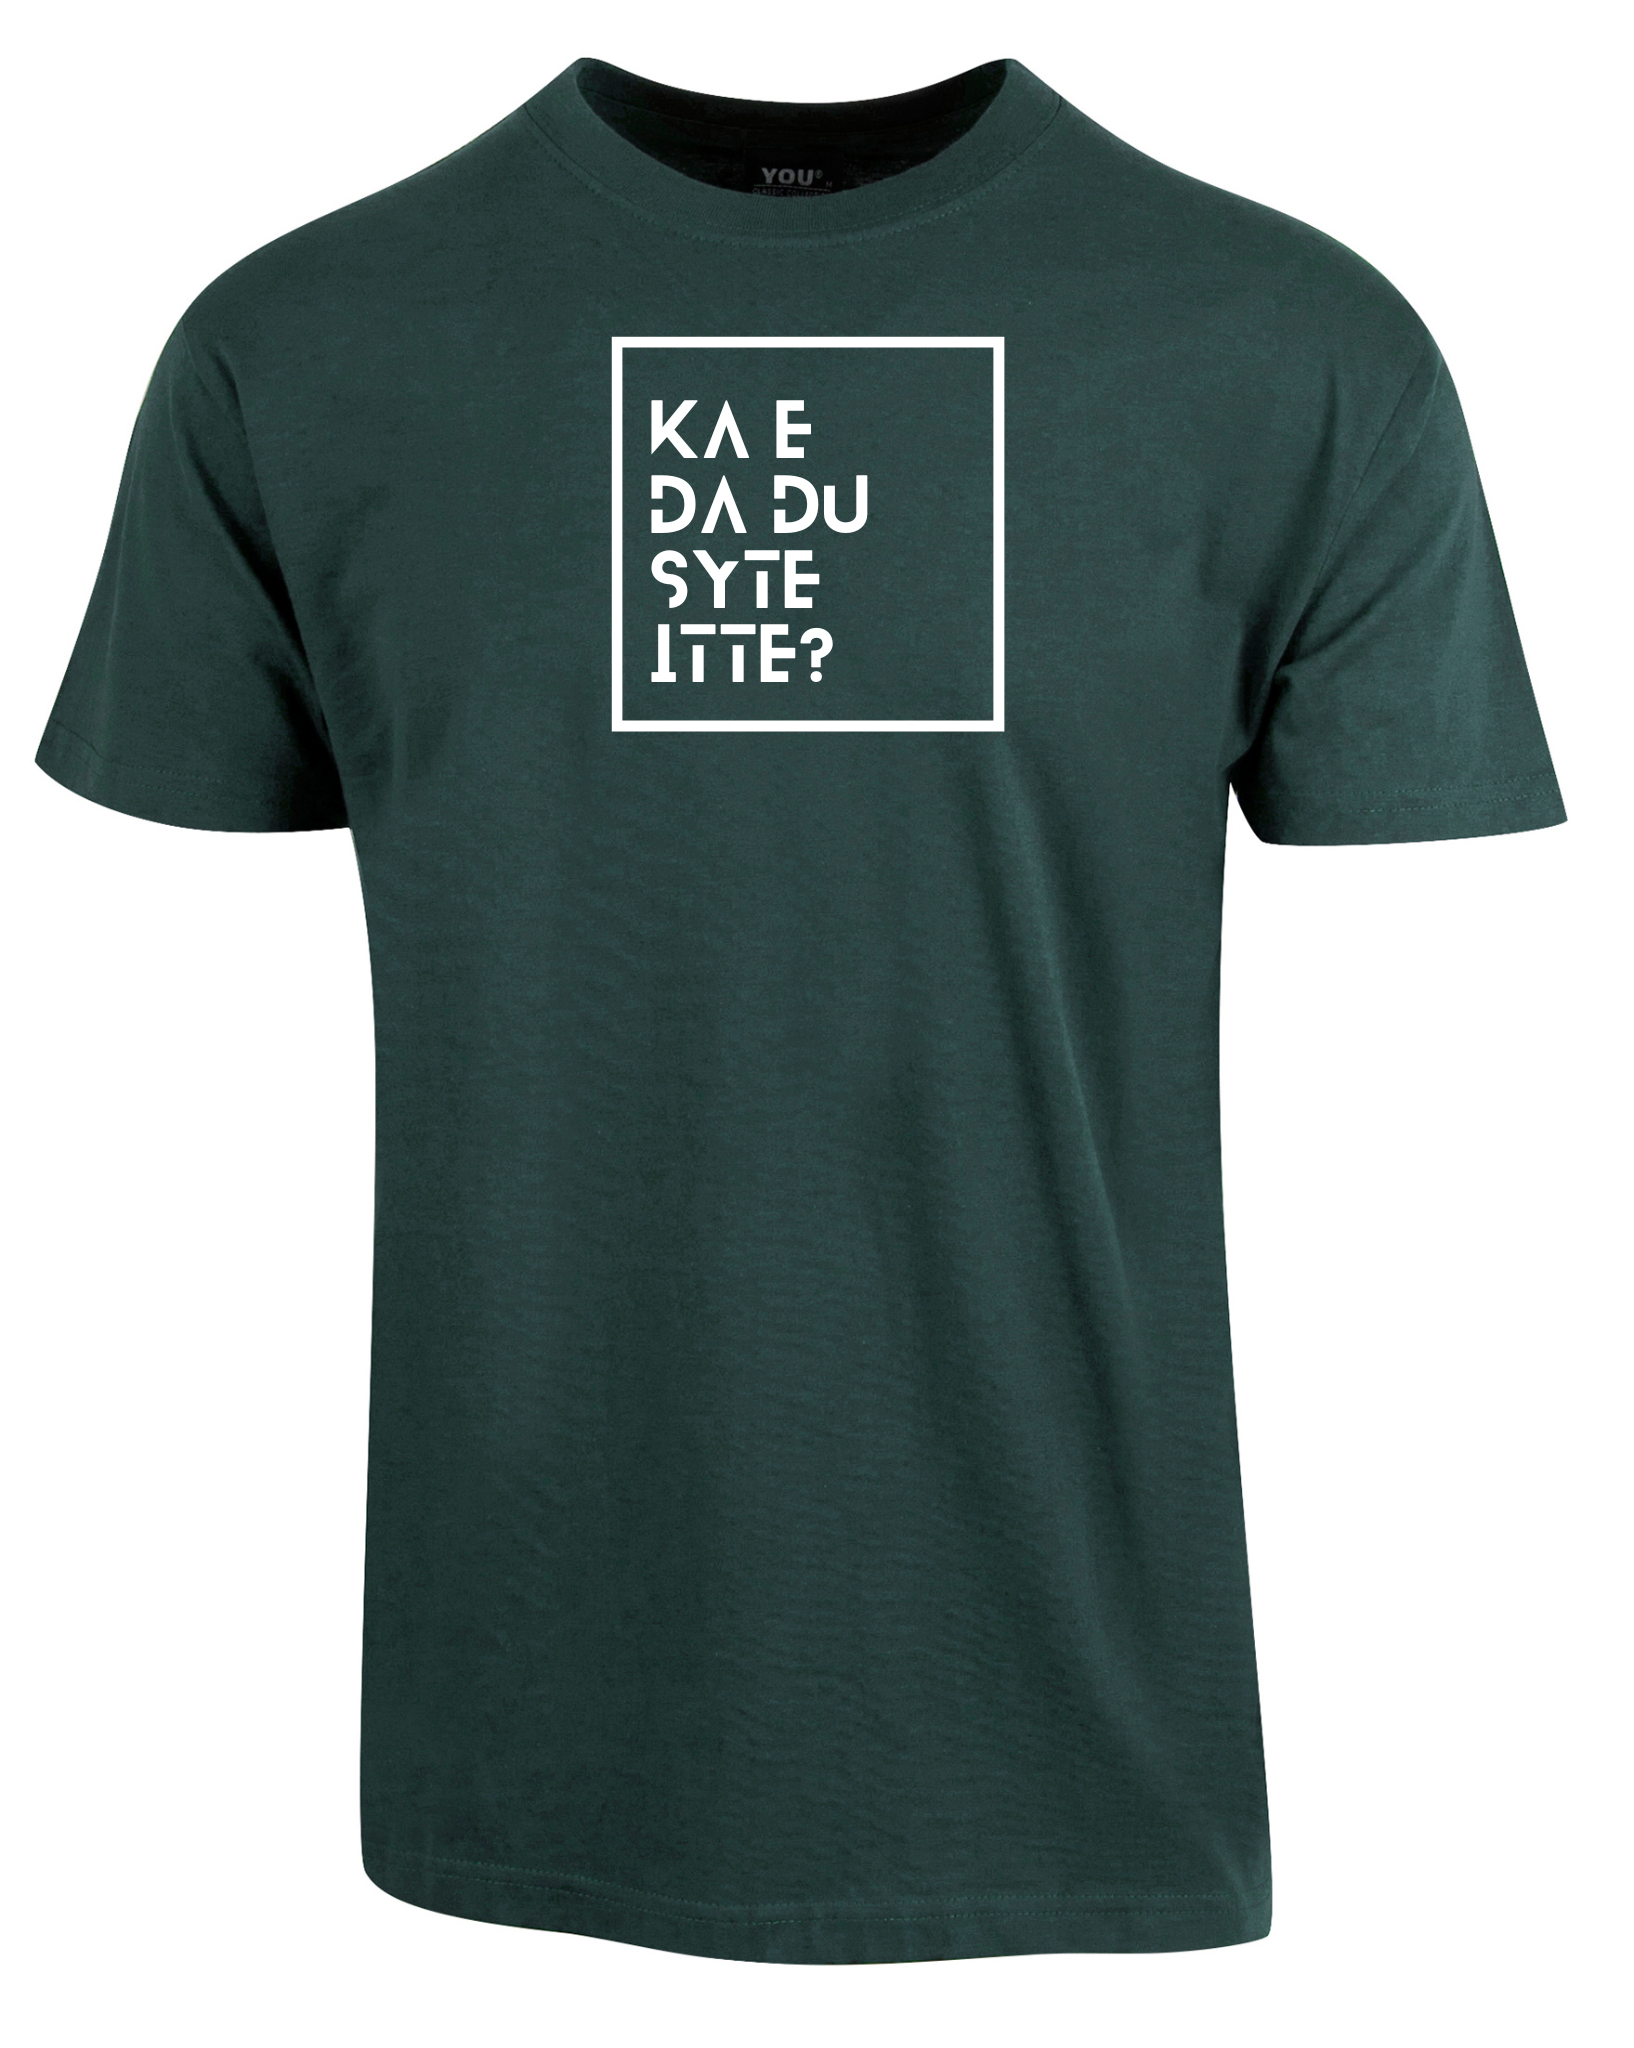 T-skjorte med teksten "Ka e da du syte itte"